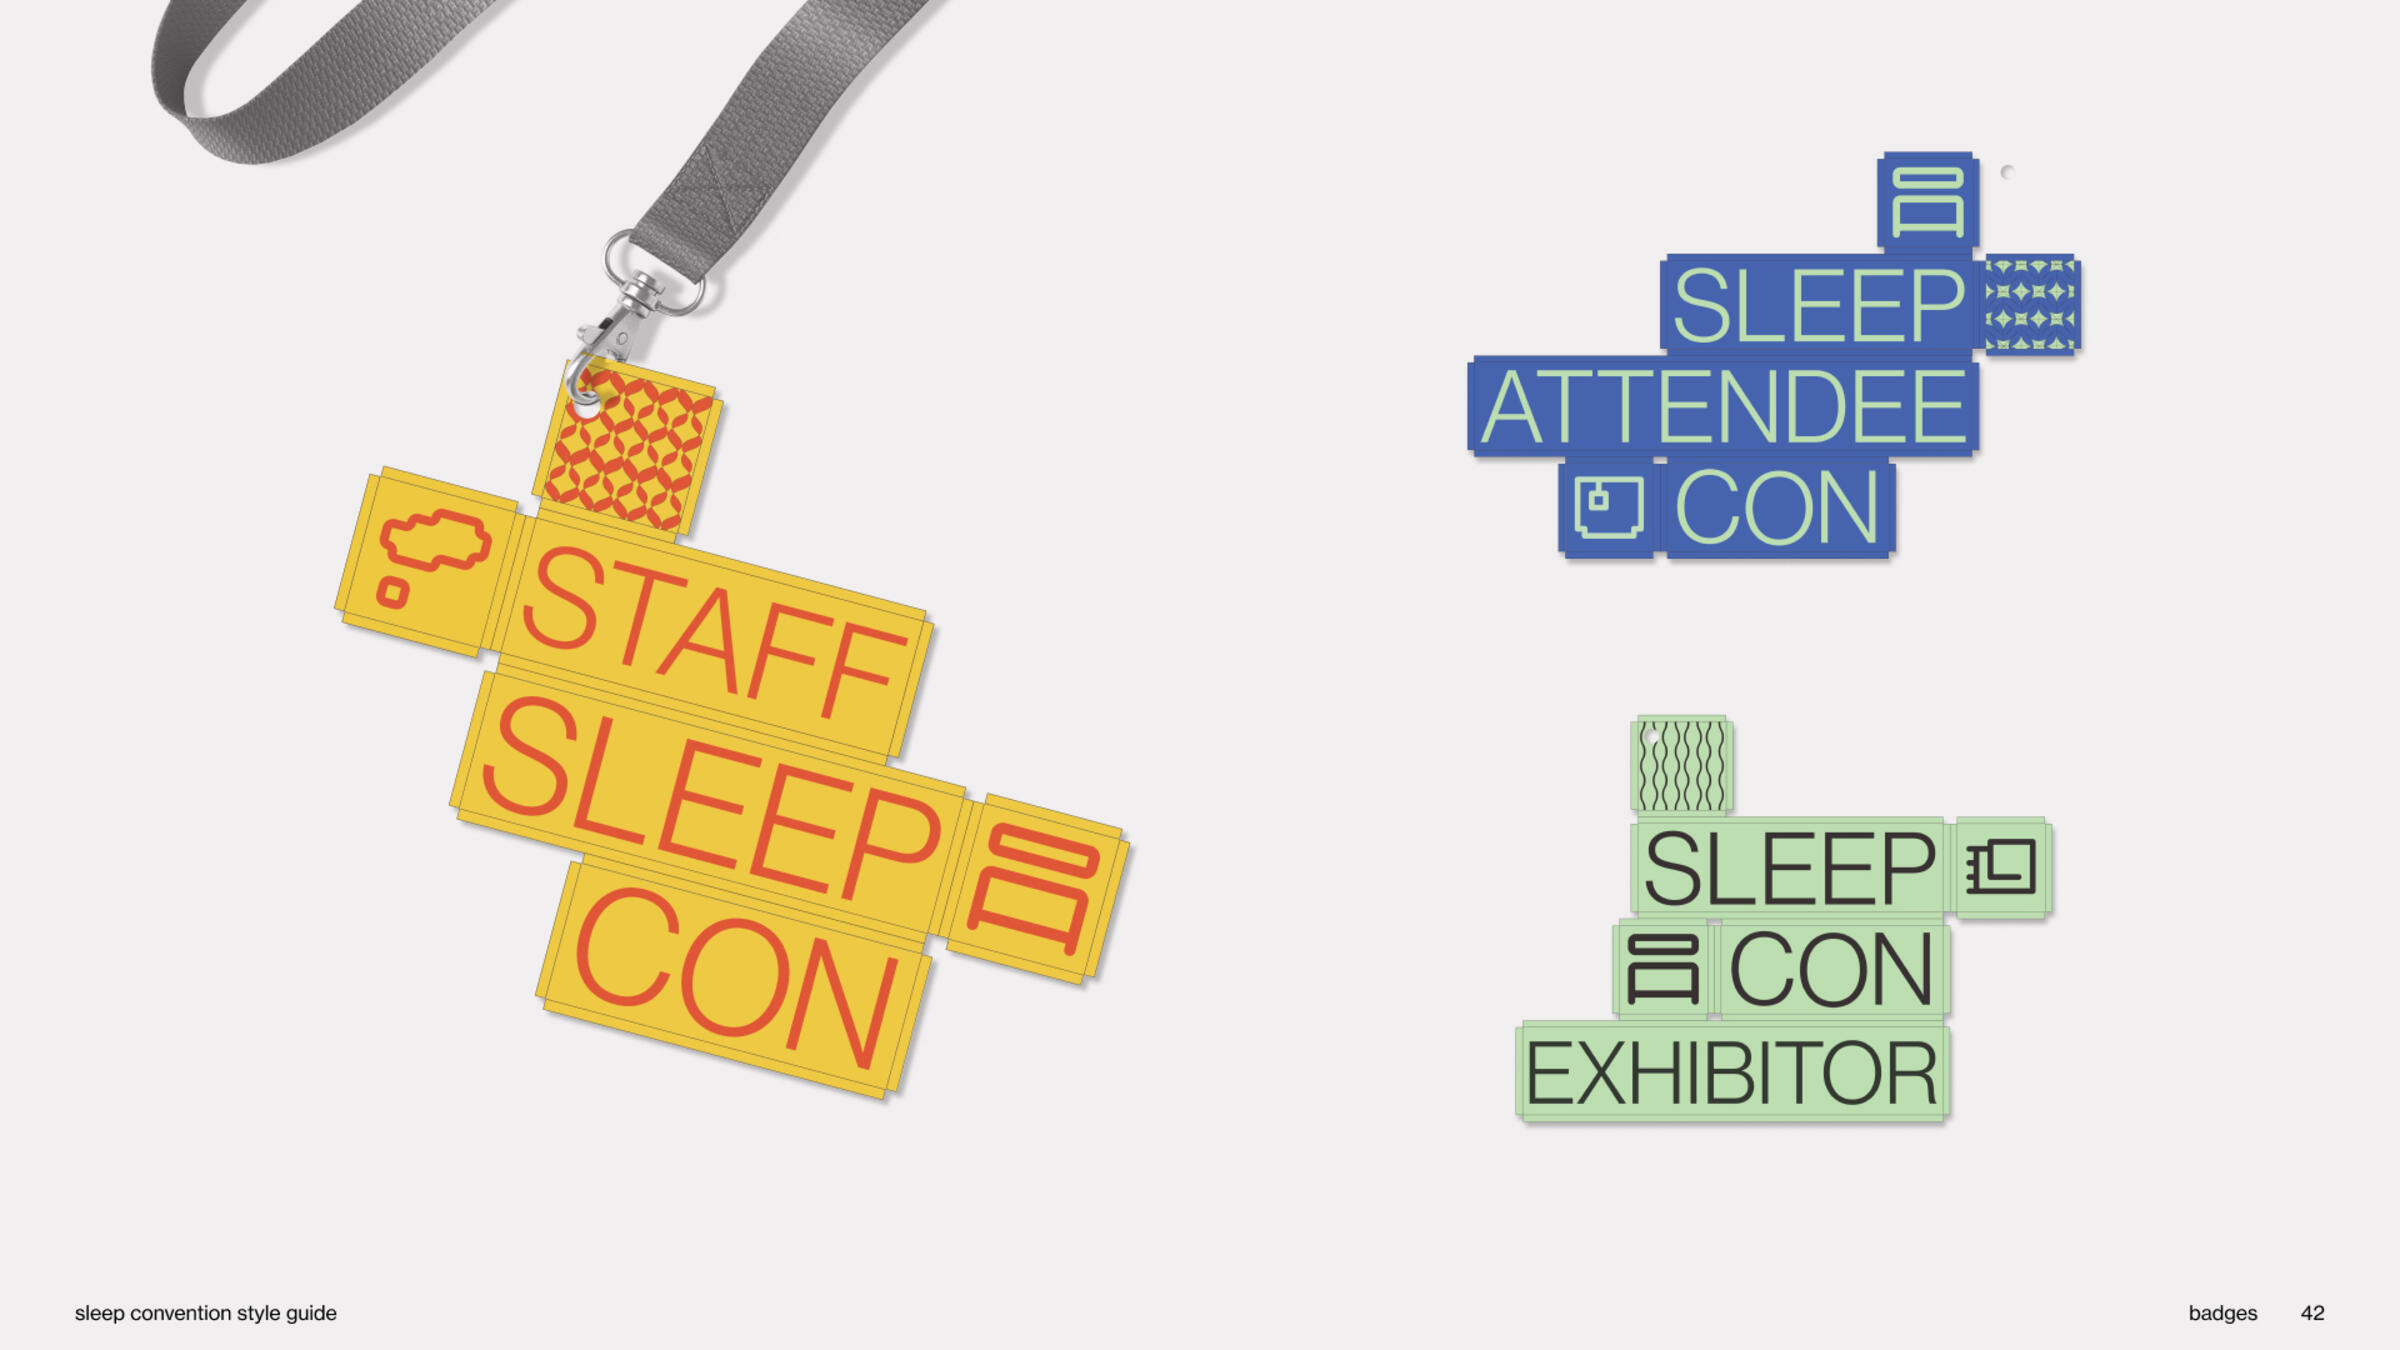 Badges for Sleep Con